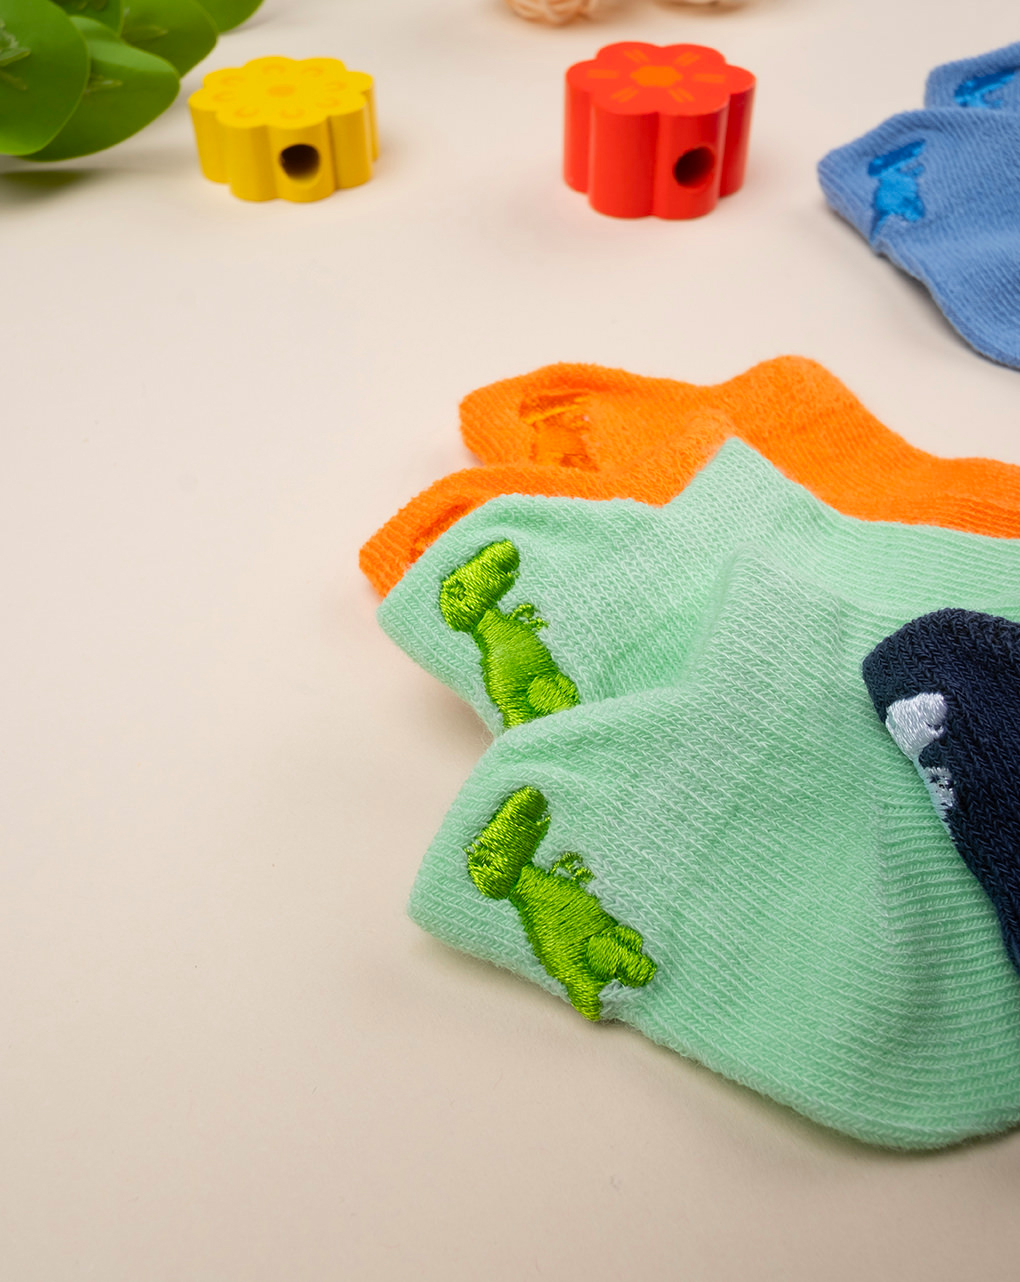 Pack 5 calcetines de bebé con bordado - Prénatal